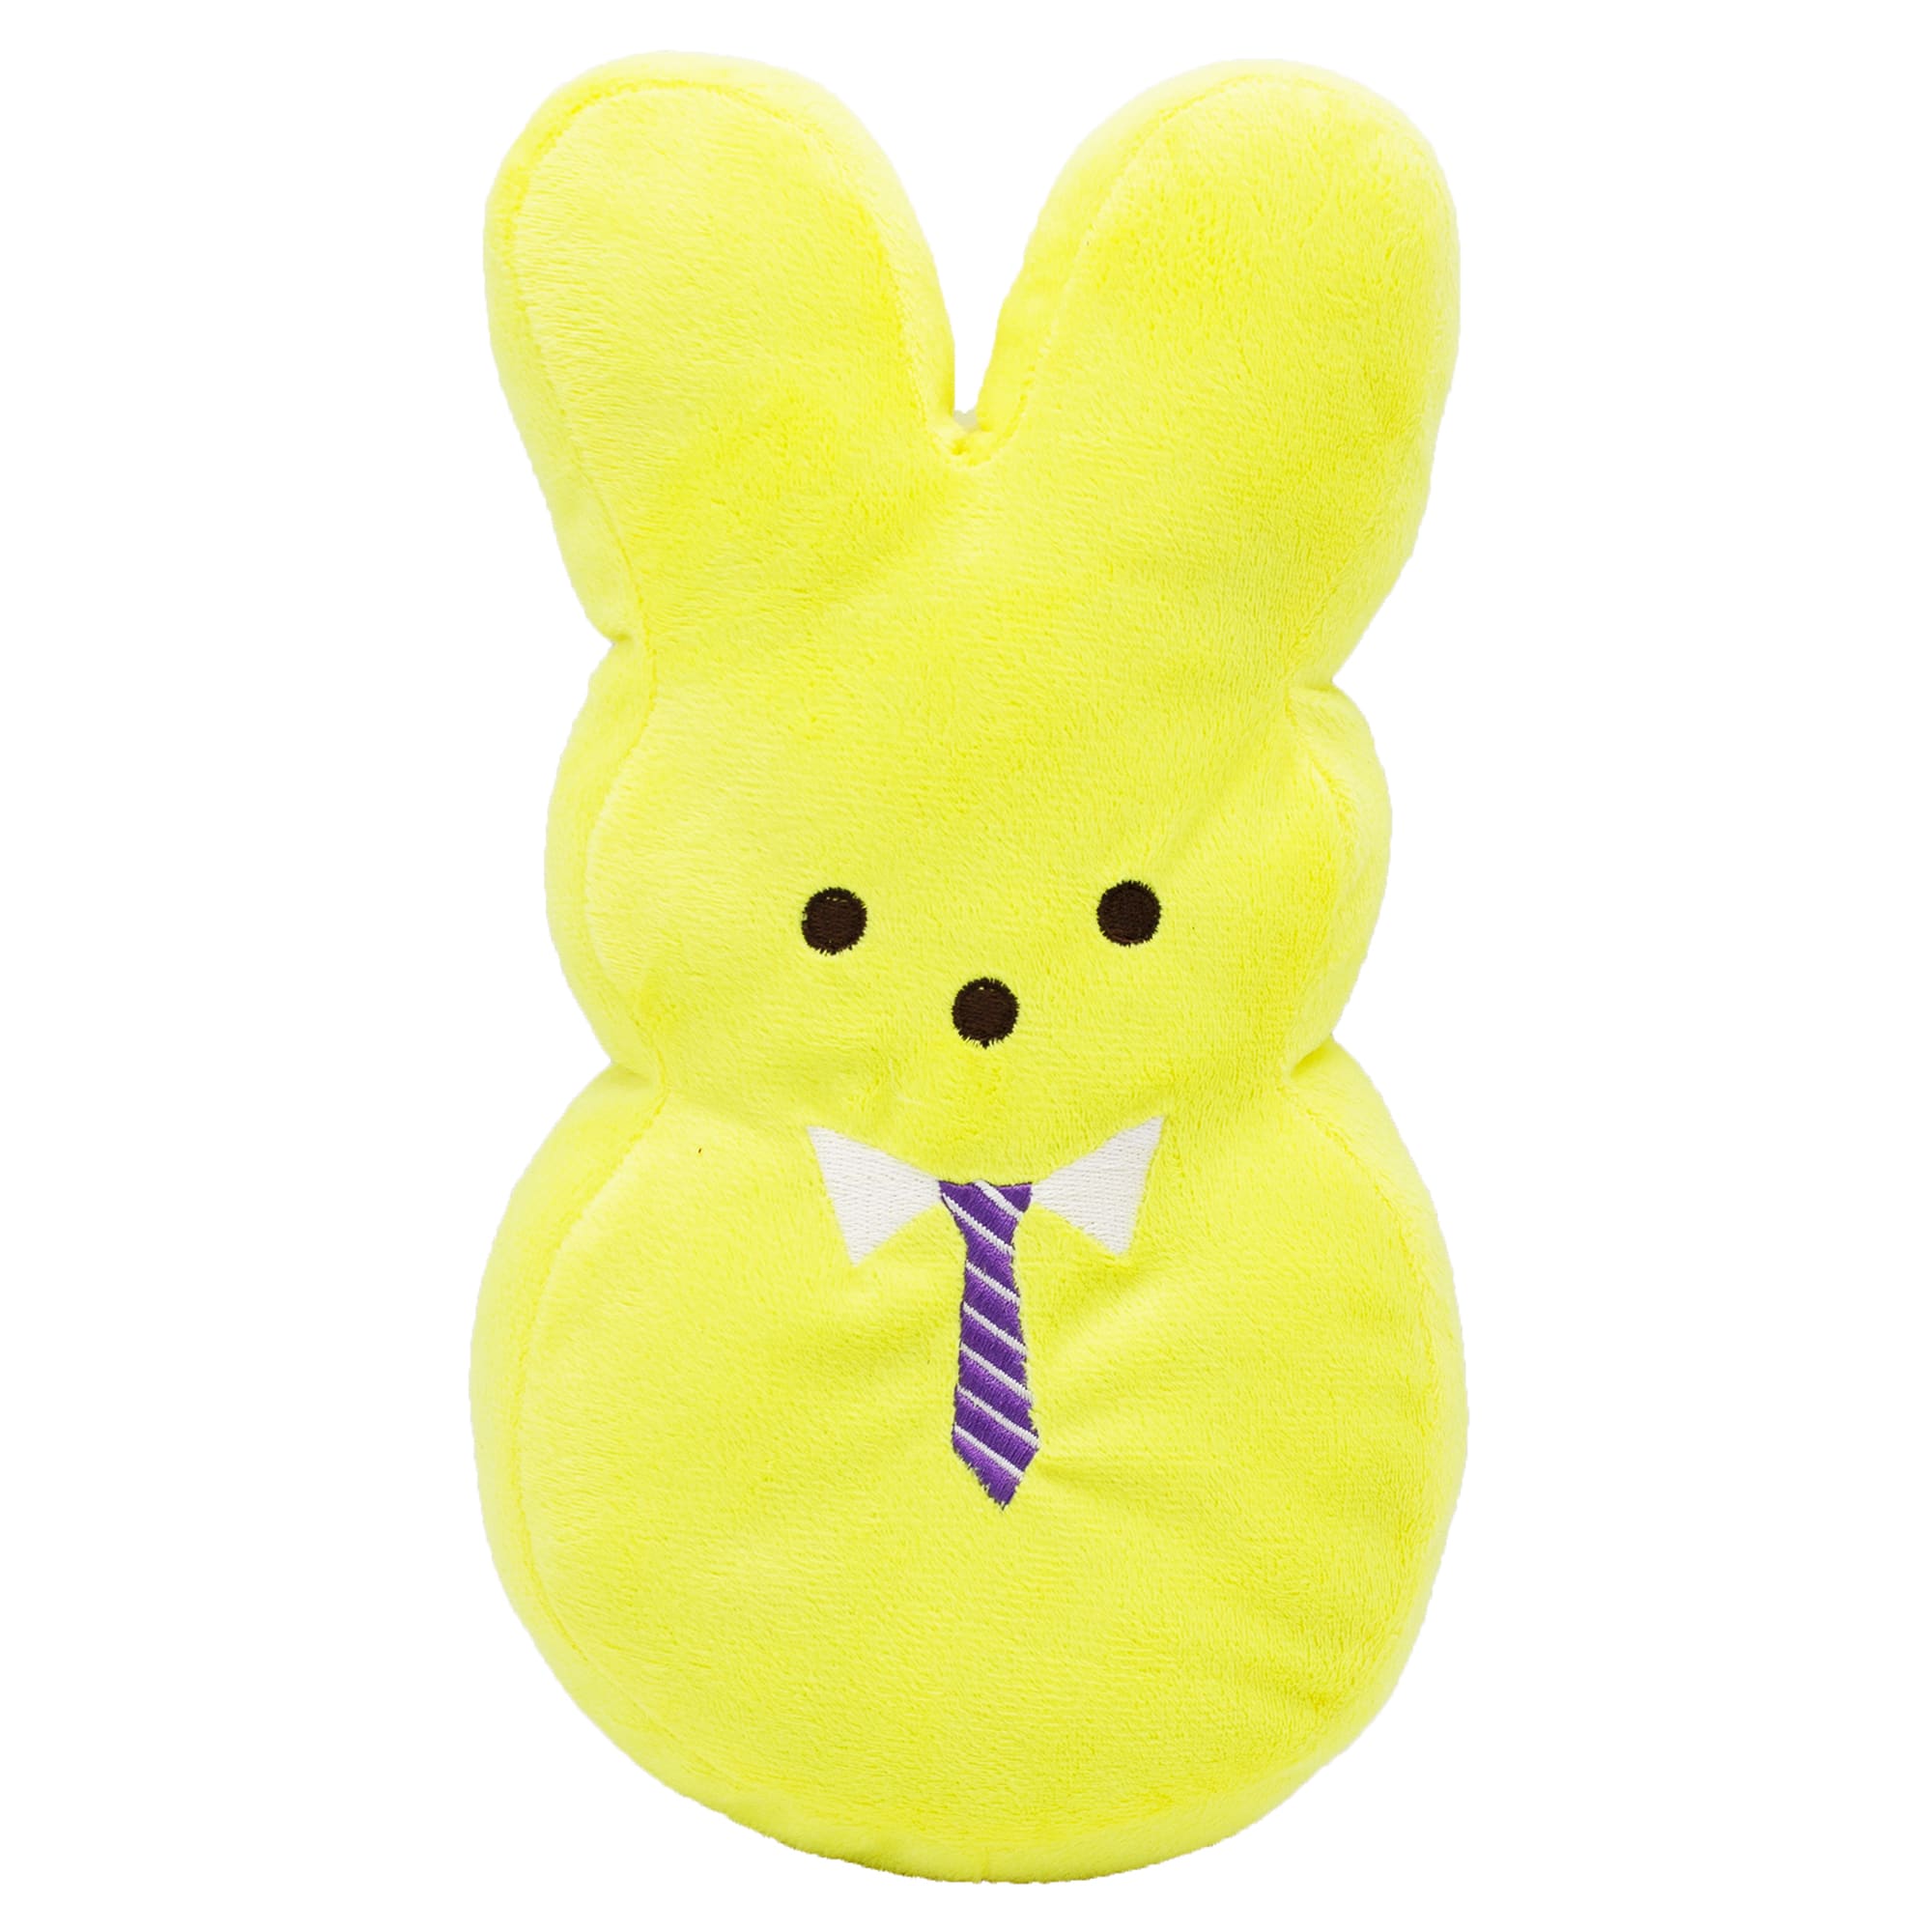 peep bunny stuffed animal